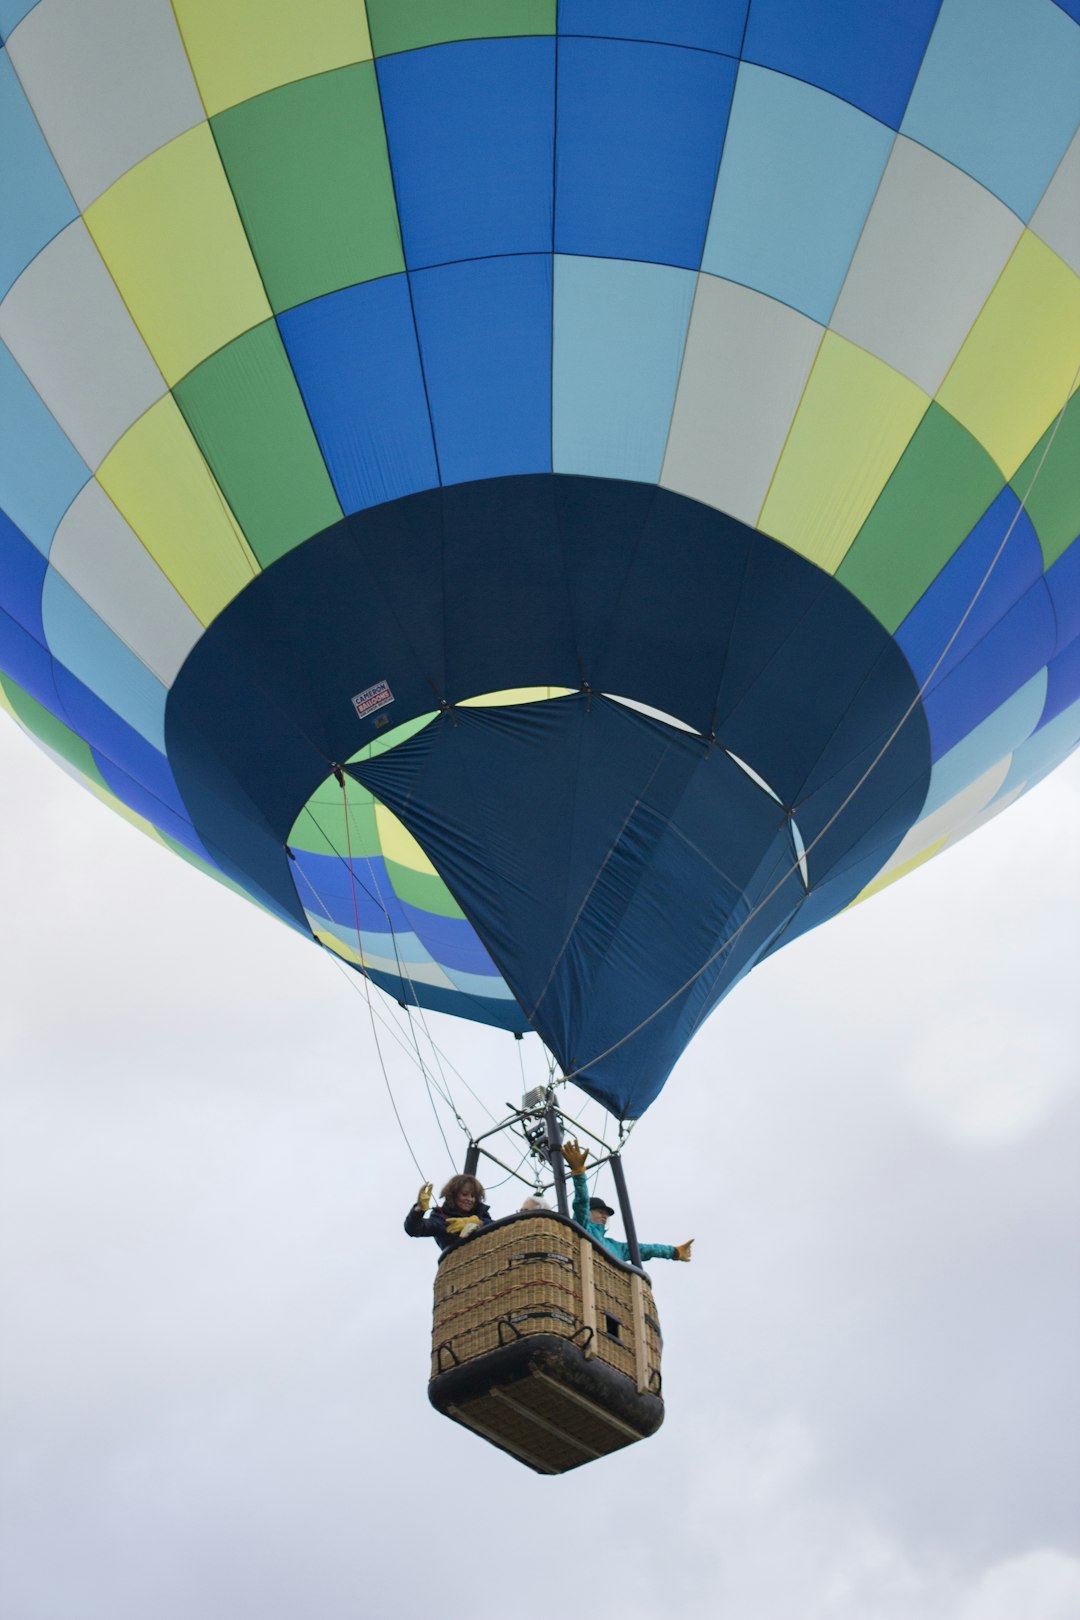 Hot air ballooning photo spot Albuquerque International Balloon Fiesta Albuquerque